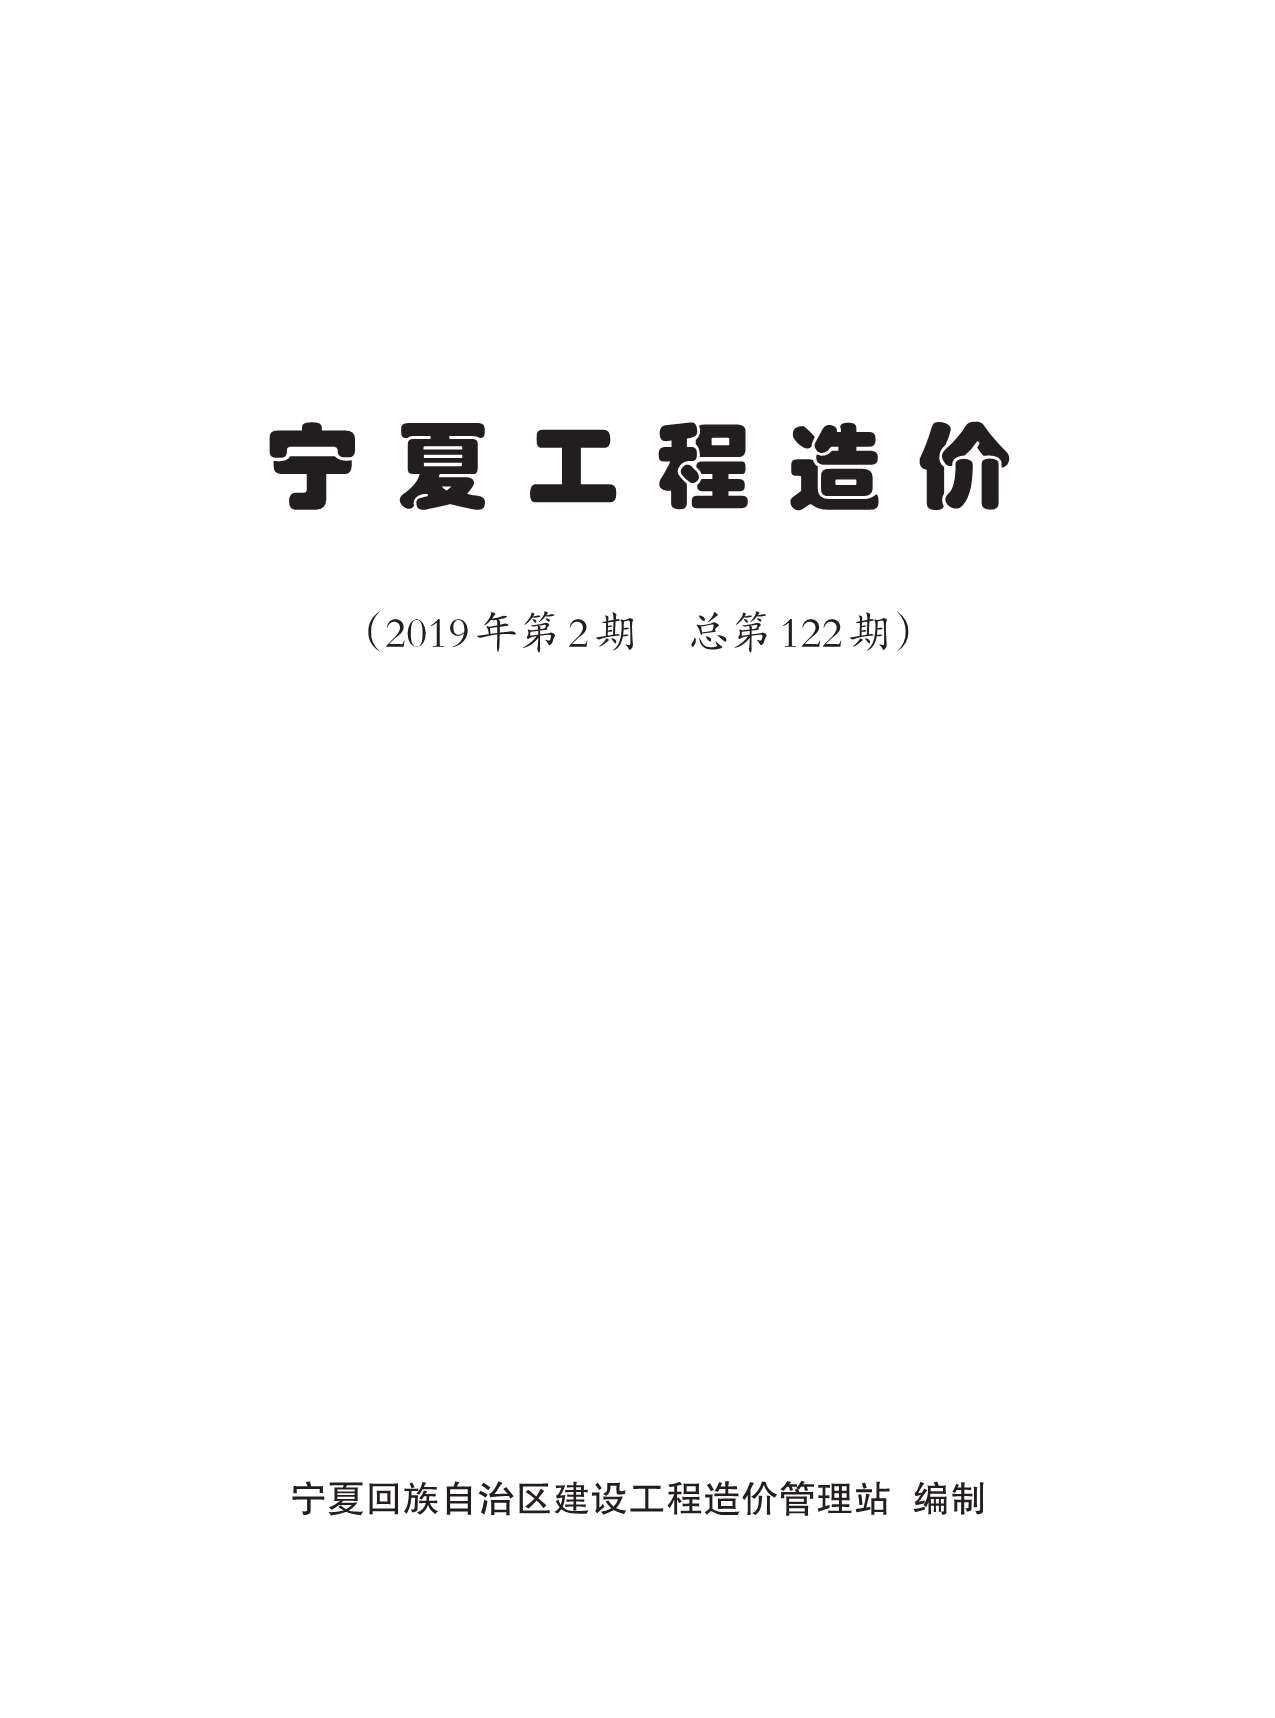 宁夏自治区2019年2月工程造价信息期刊封面